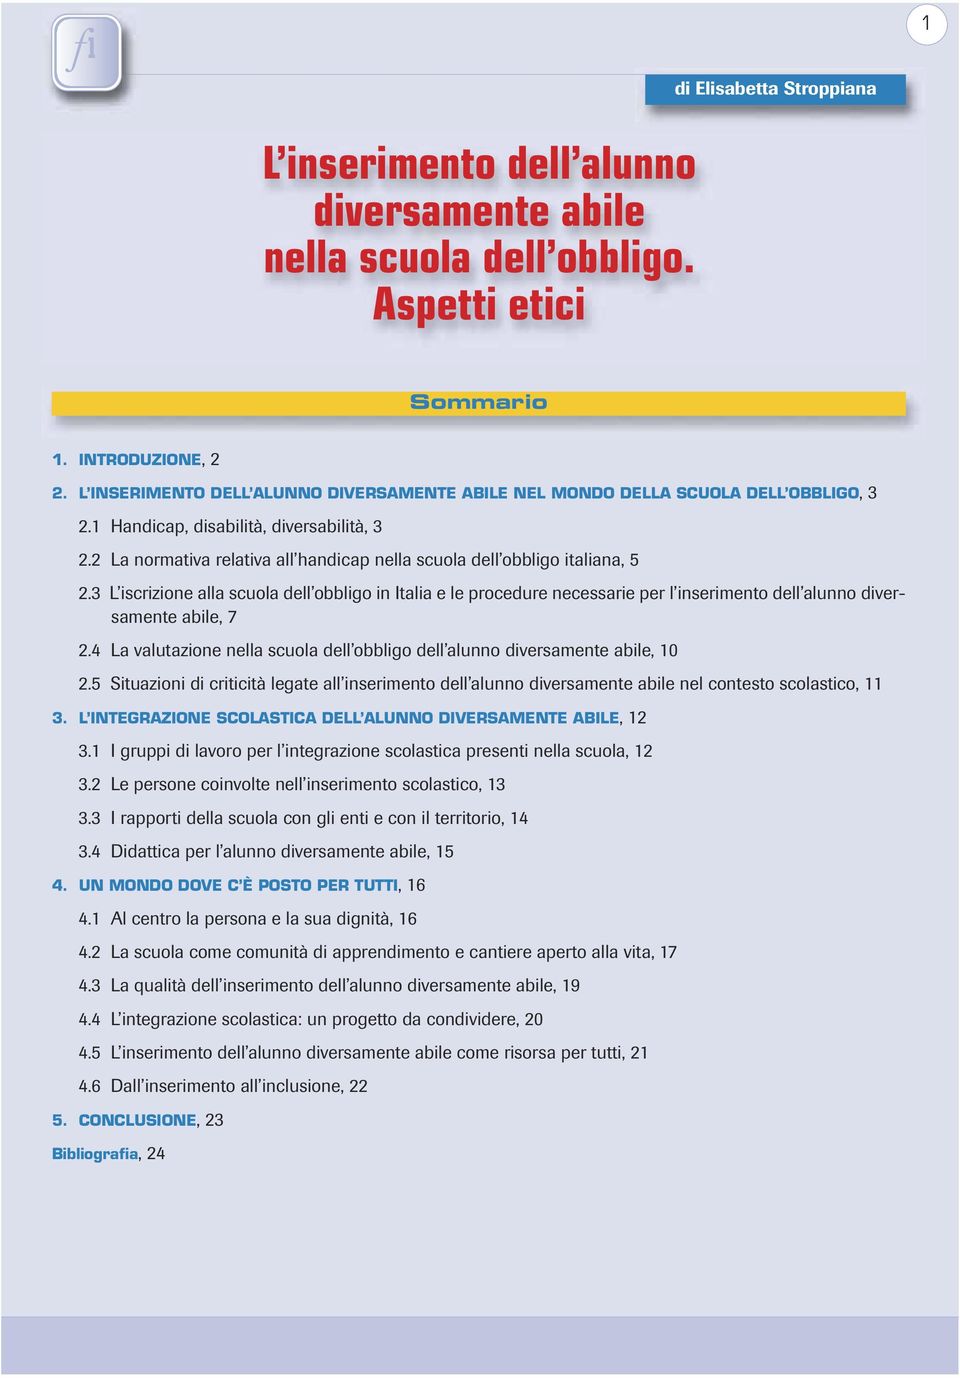 2 La normativa relativa all handicap nella scuola dell obbligo italiana, 5 2.